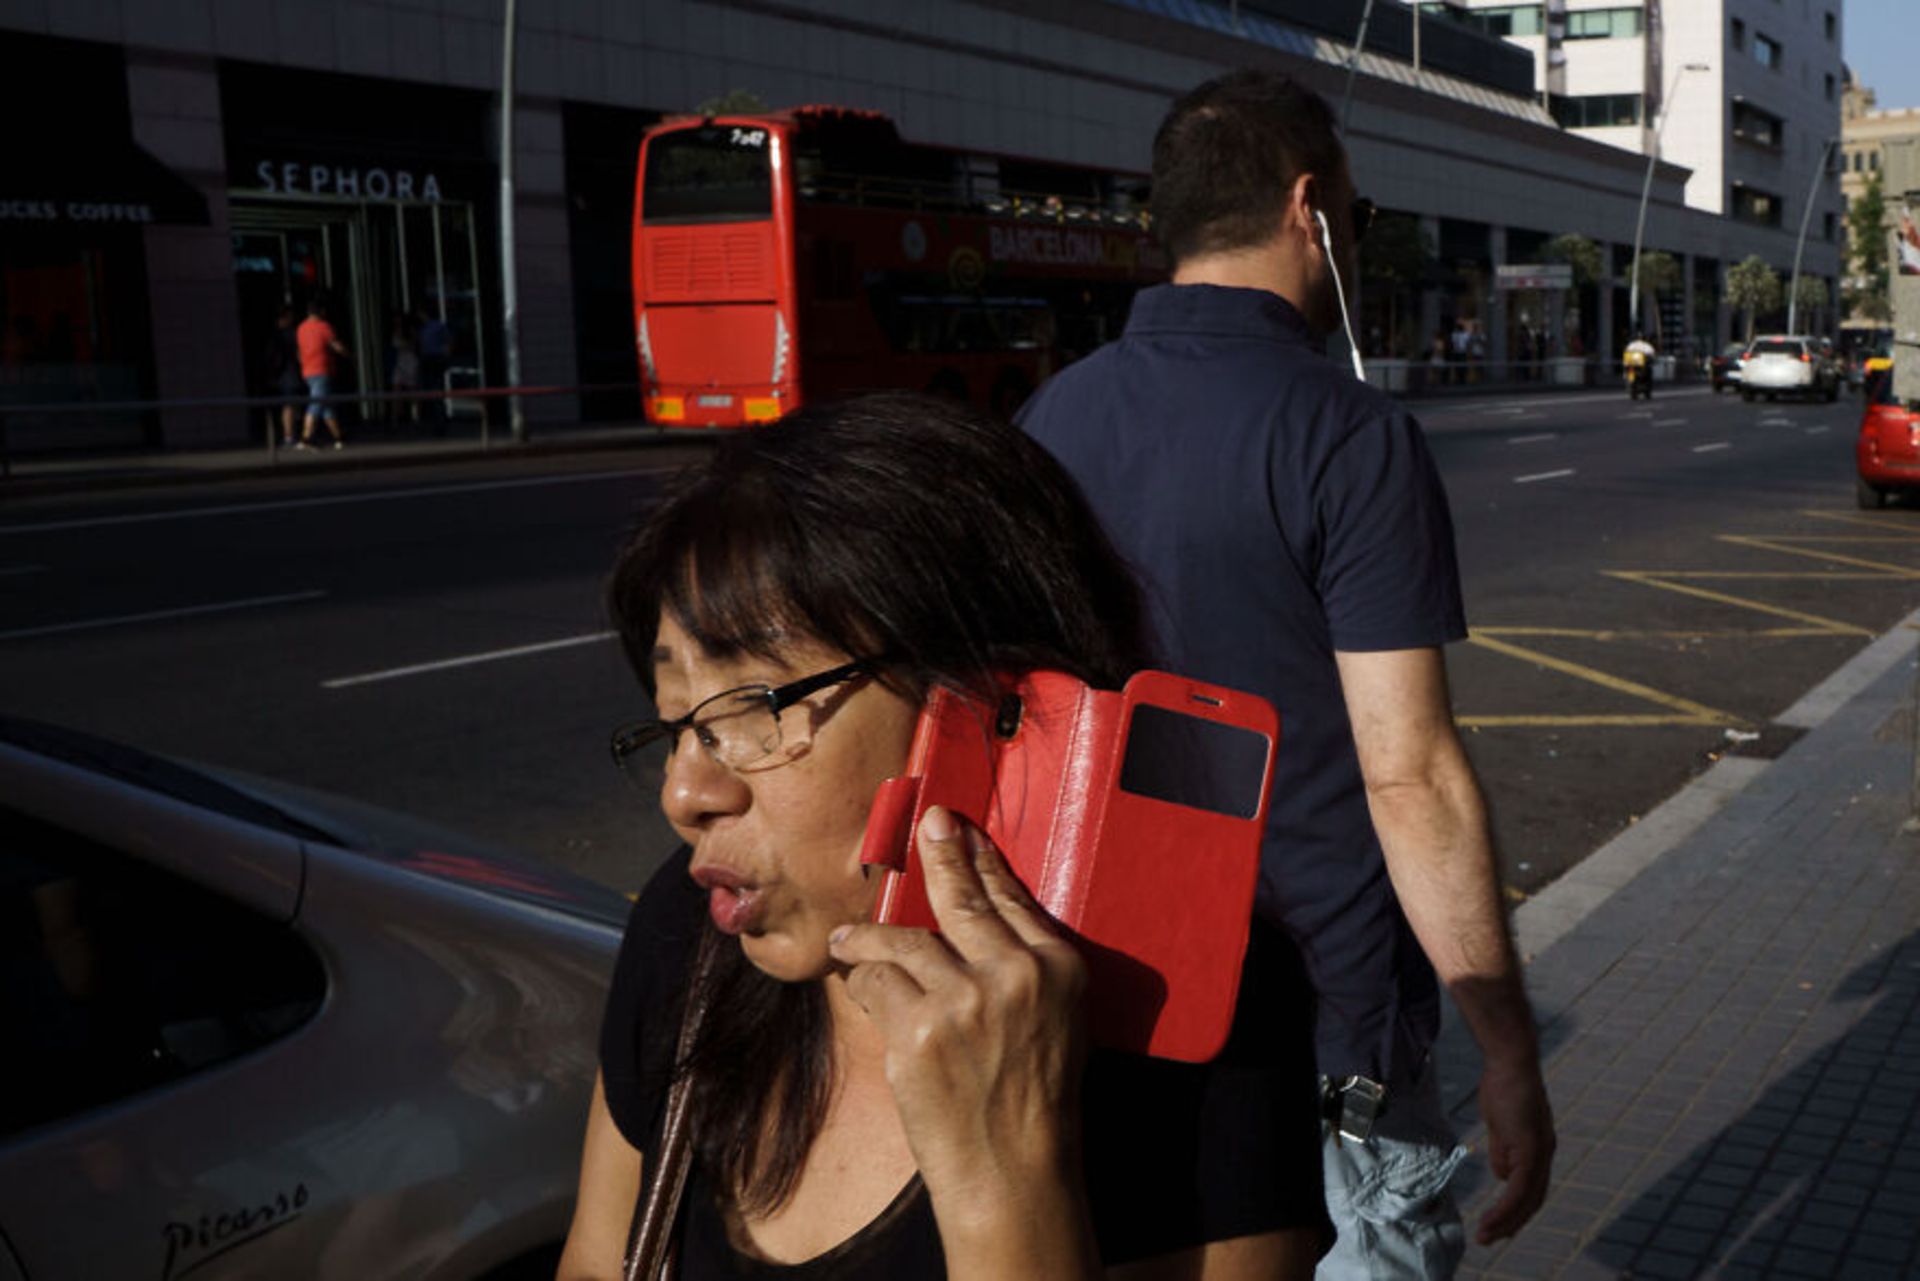 زن در حال صحبت با گوشی با قاب قرمز اتوبوس قرمز